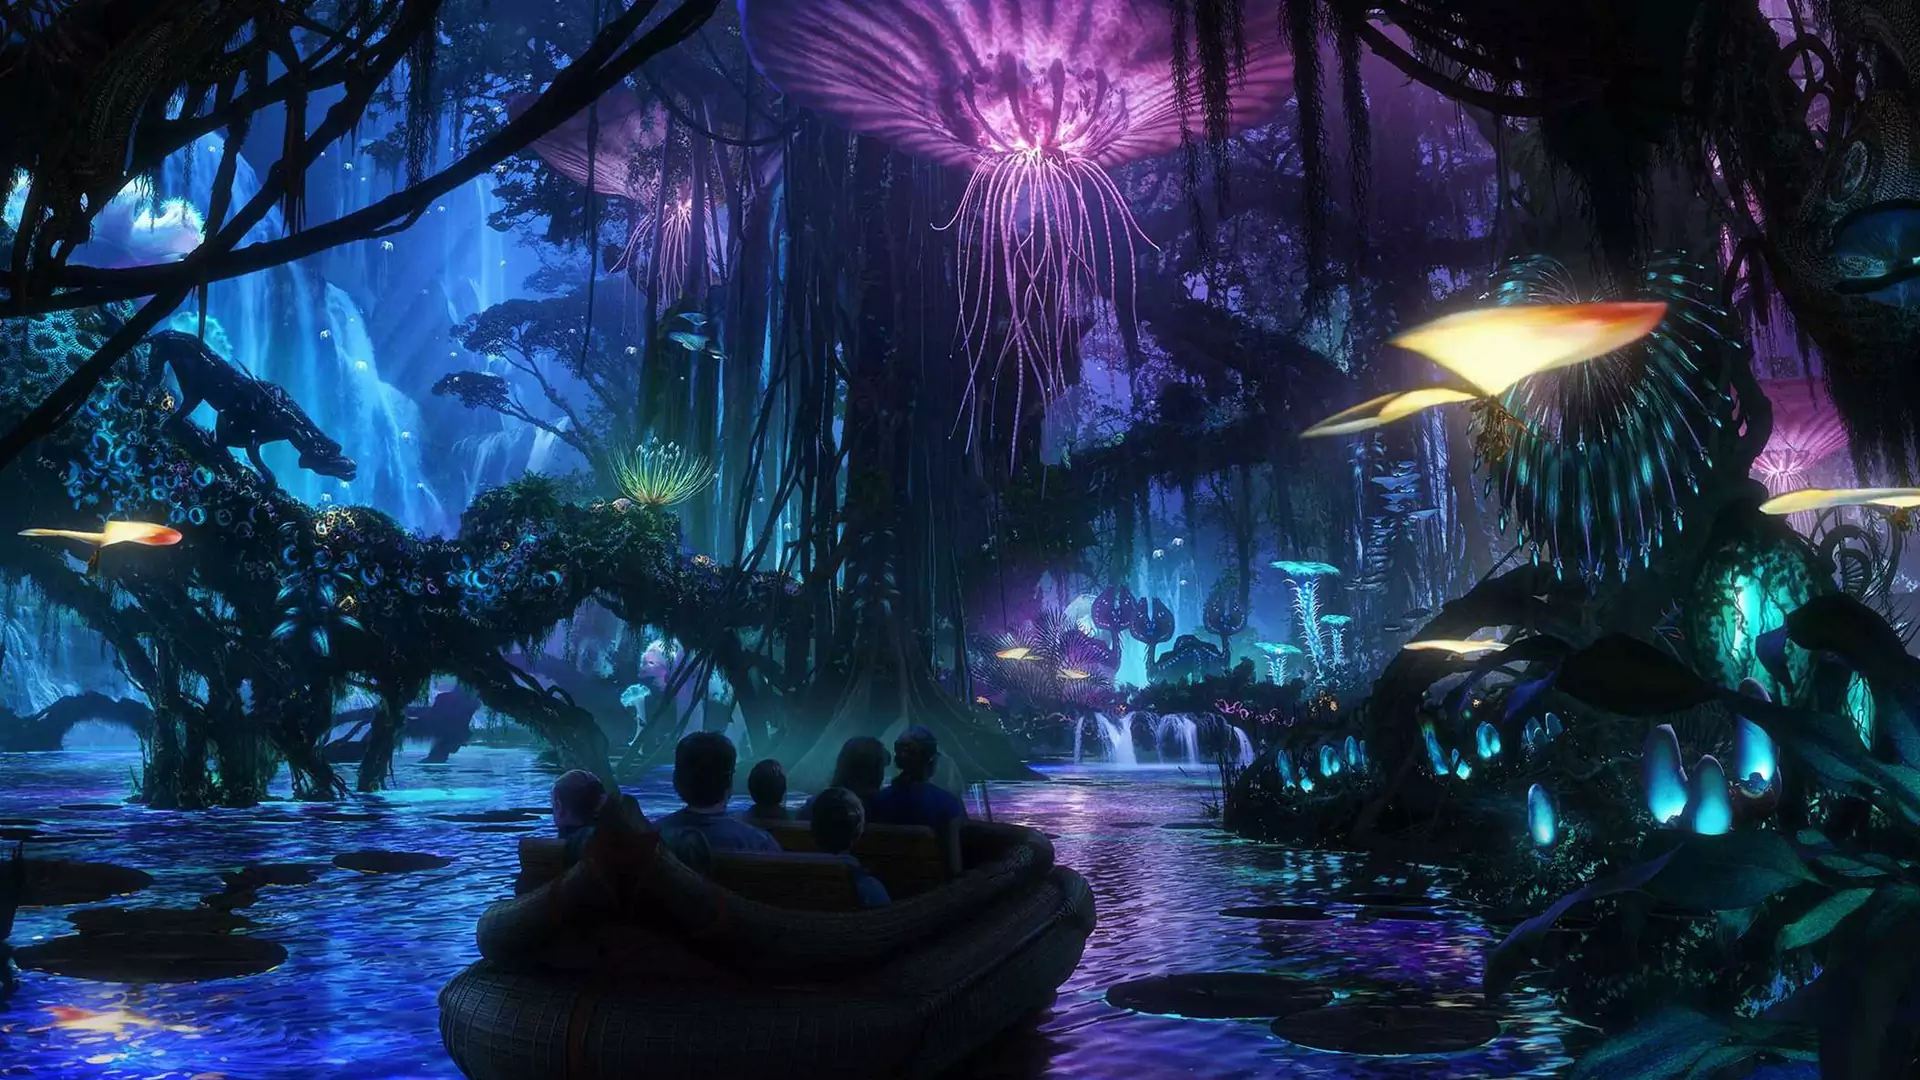 Otwarcie parku rozrywki poświęconego filmowi "Avatar" coraz bliżej! Zobacz pierwsze zdjęcia